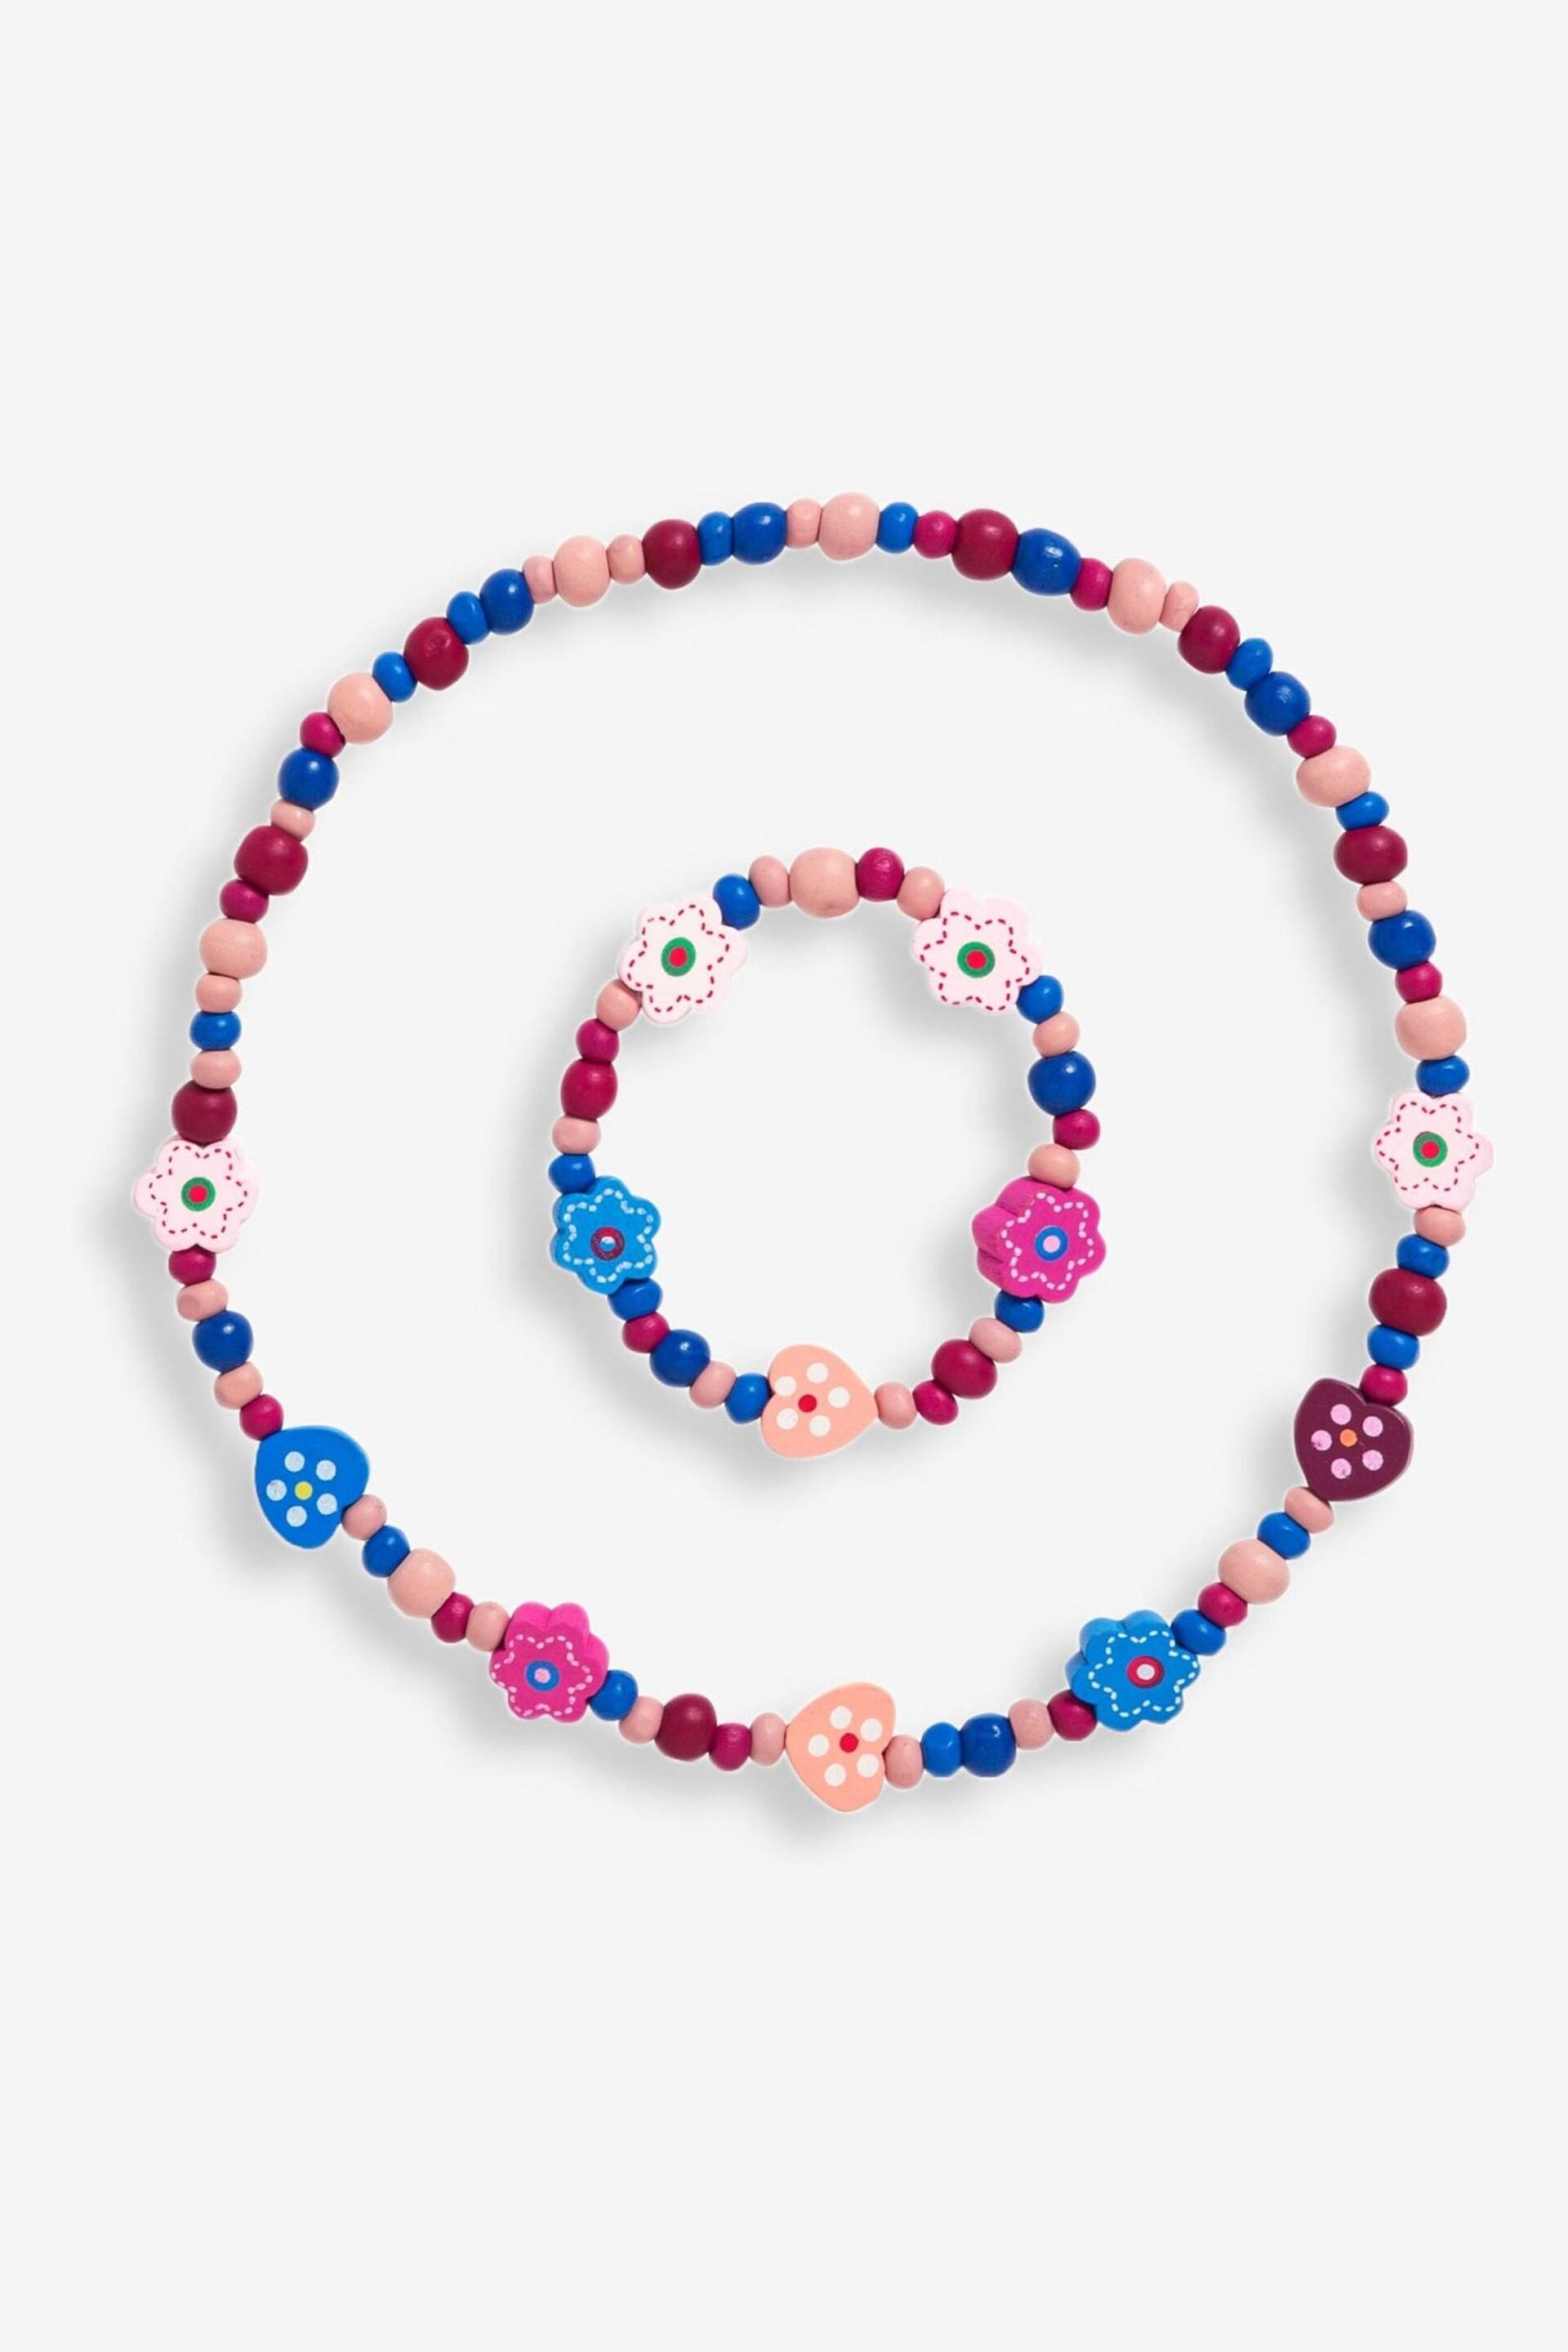 JoJo Maman Bébé Pink/Blue Toddler Necklace Set - Image 1 of 1